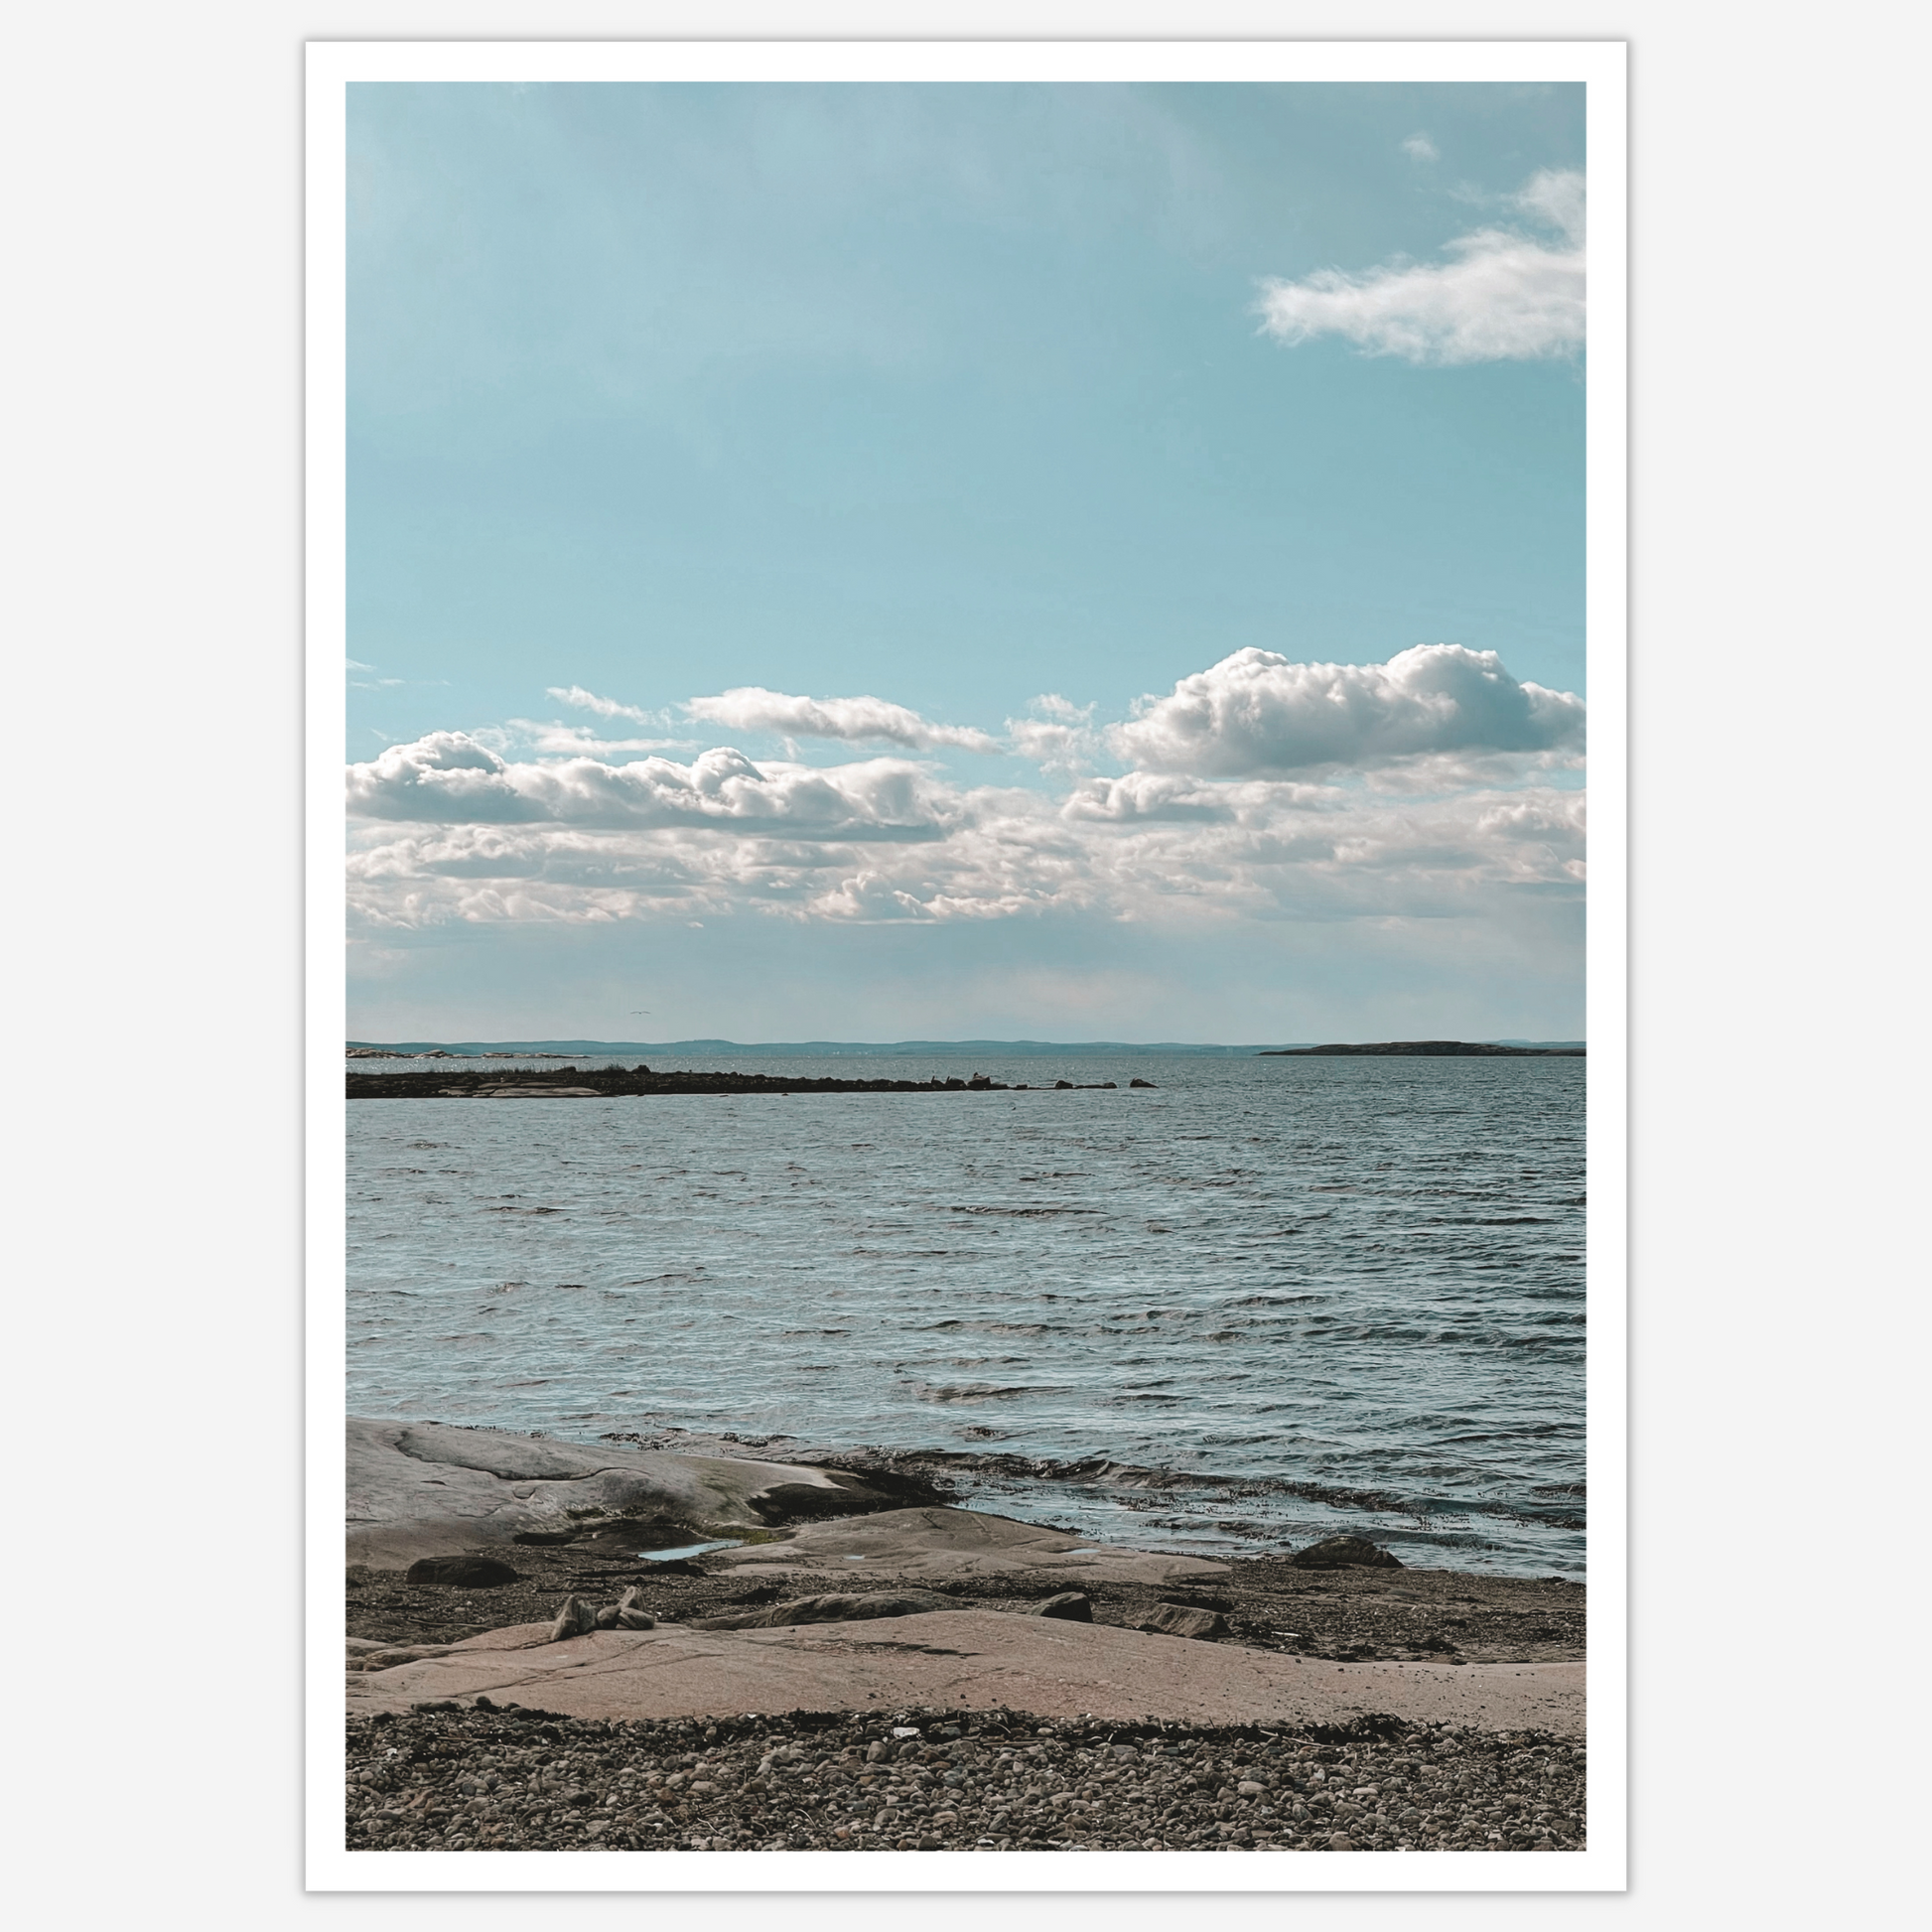 Himmel møter hav ved Saltholmen. Strand med svaberg, krusninger på sjøen og en blå himmel med hvite skyer.